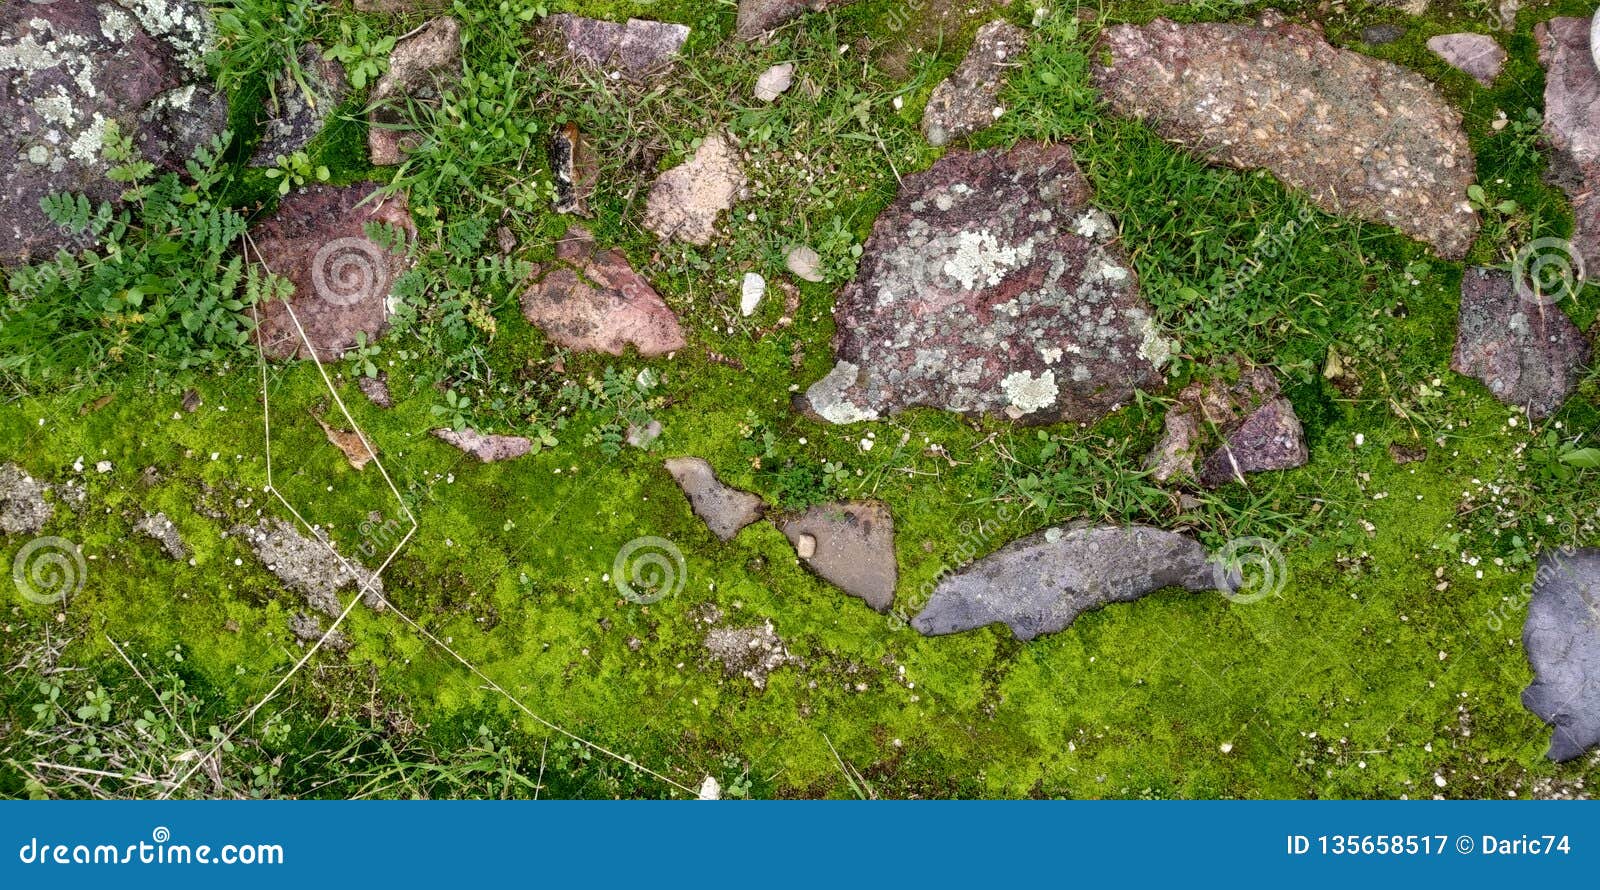 real green moss seamless texture